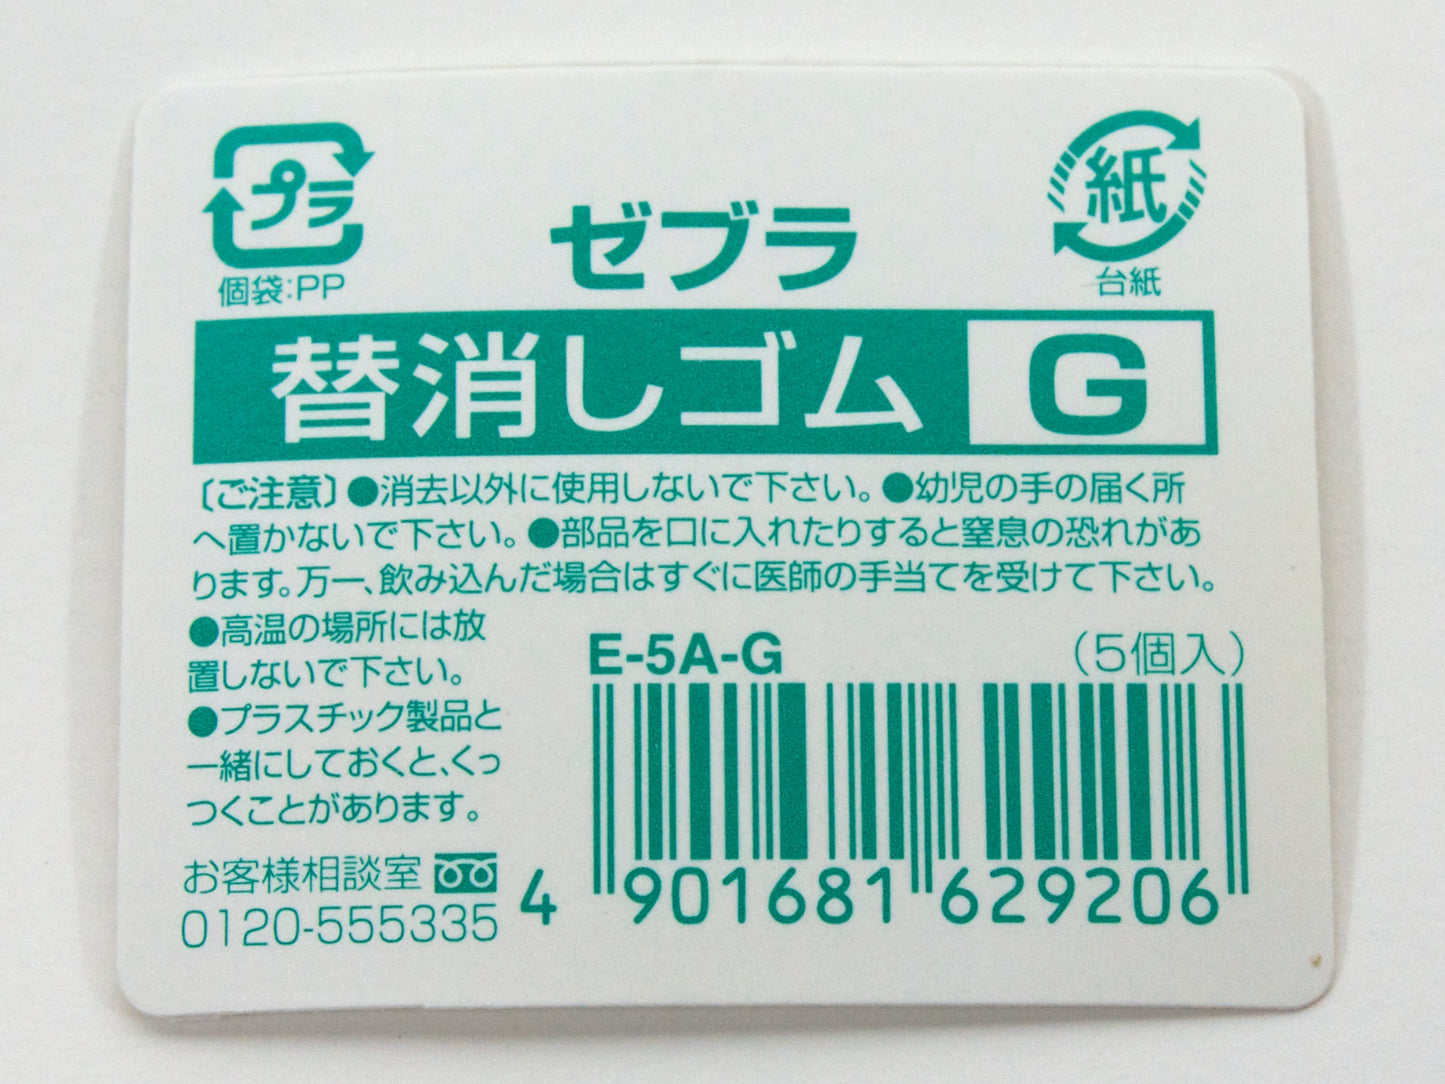 Eraser G